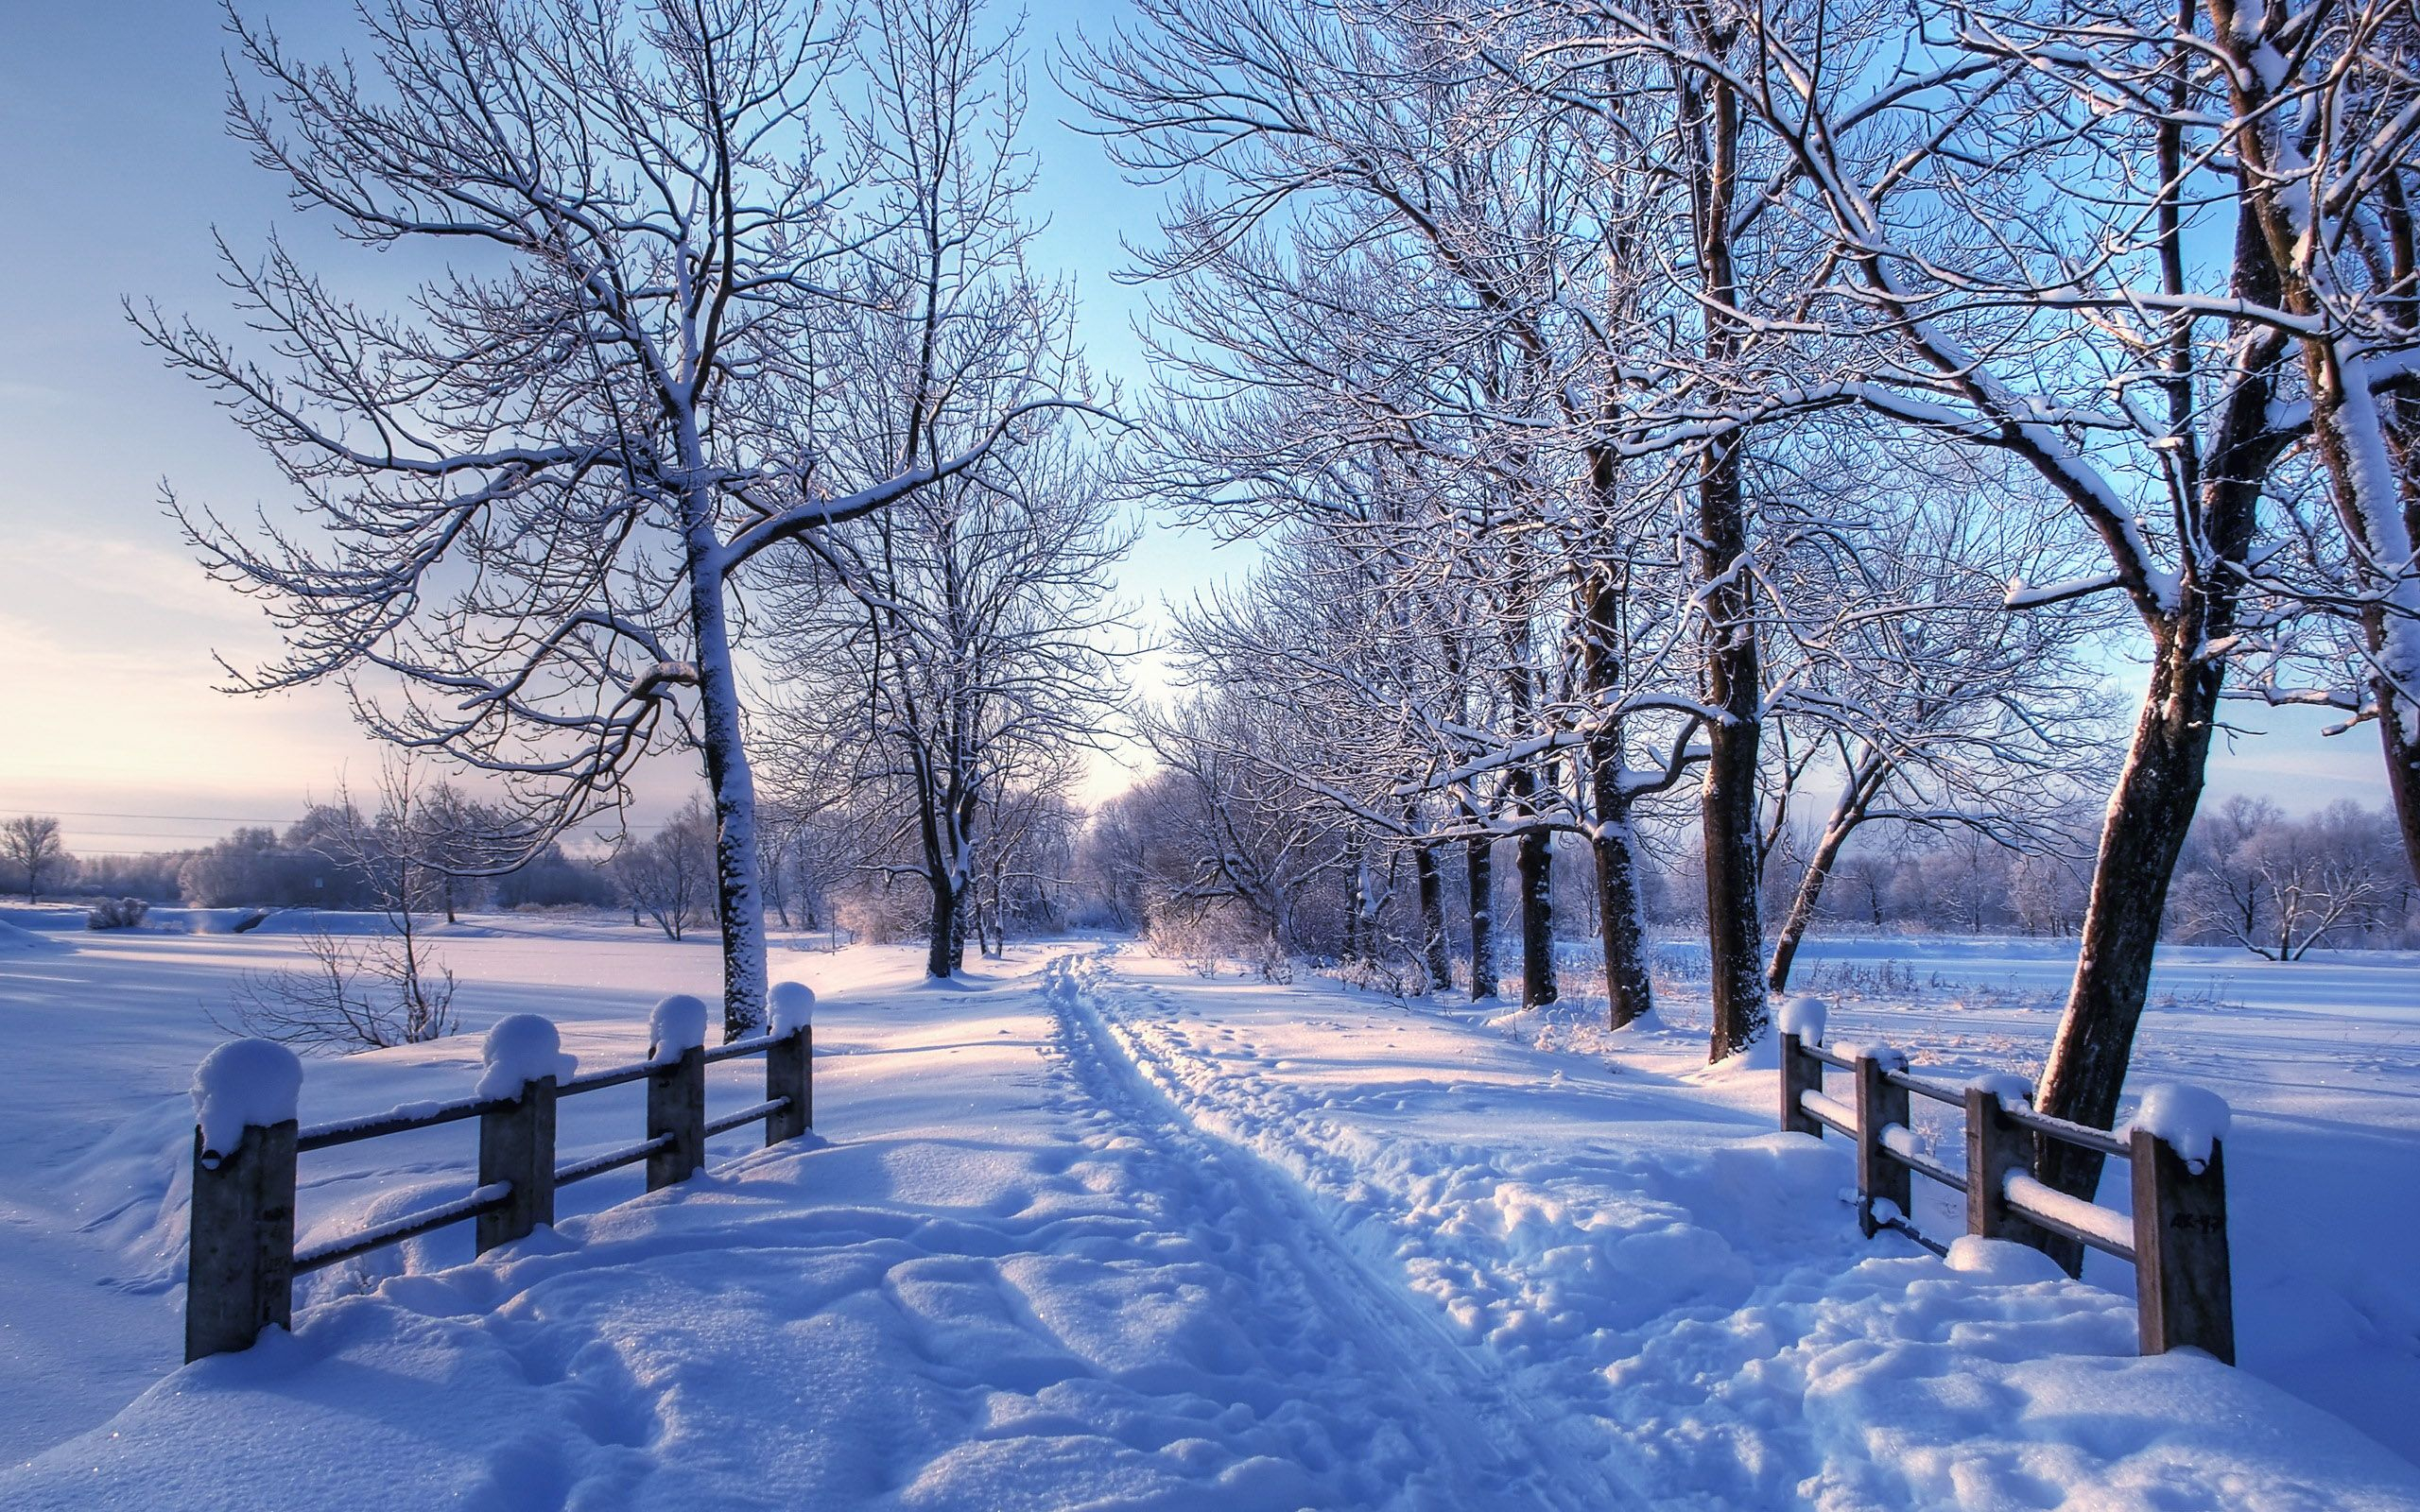 2560x1600 Winter Wallpaper For Mac | Winter landscape, Winter scenery, Winter scenes